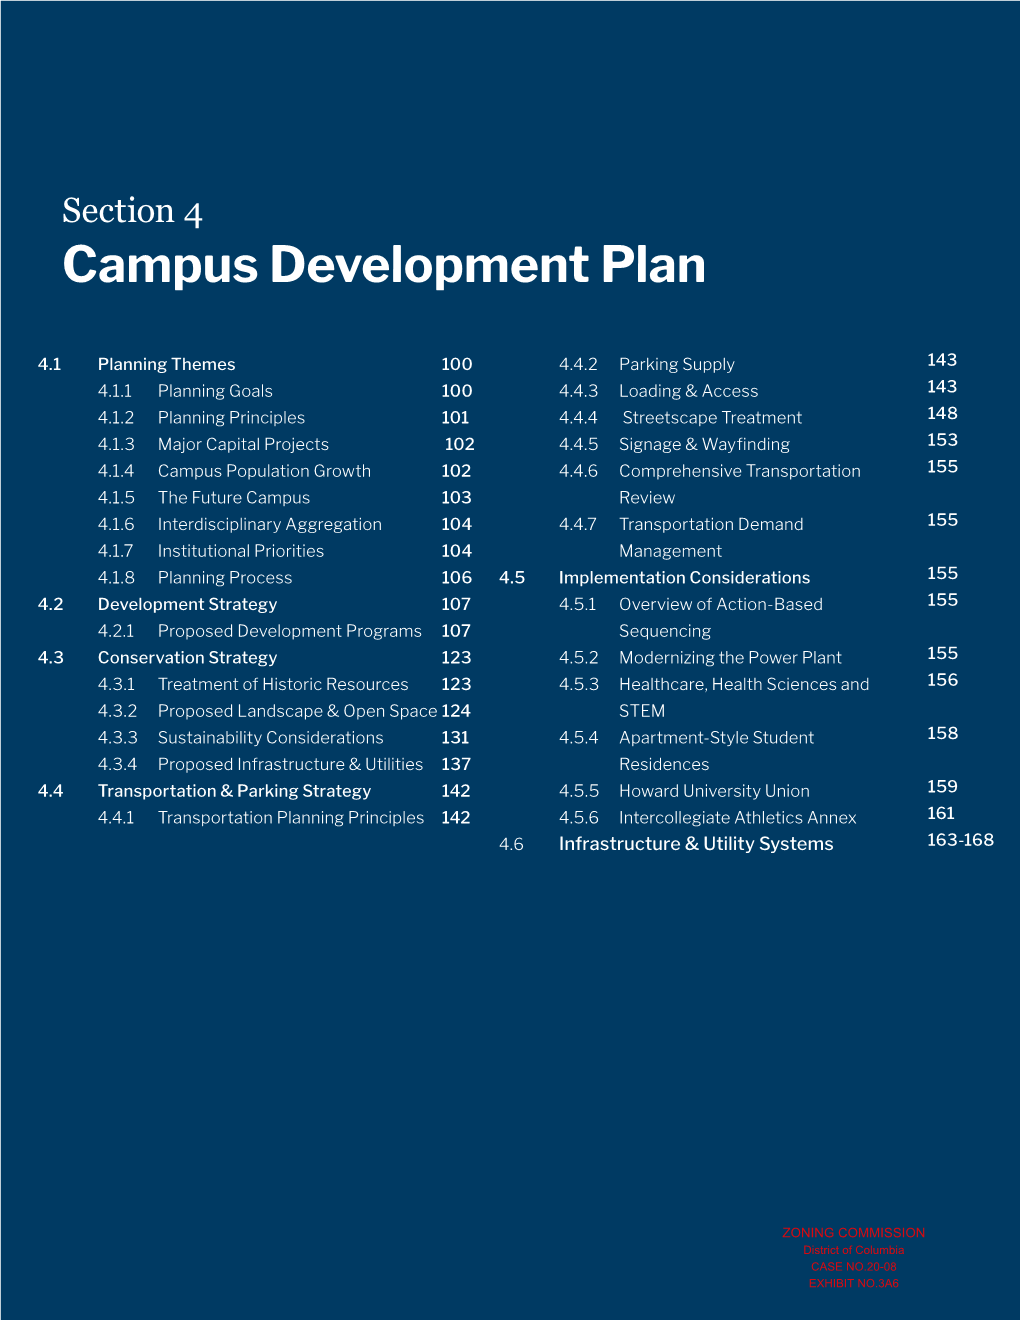 Campus Development Plan